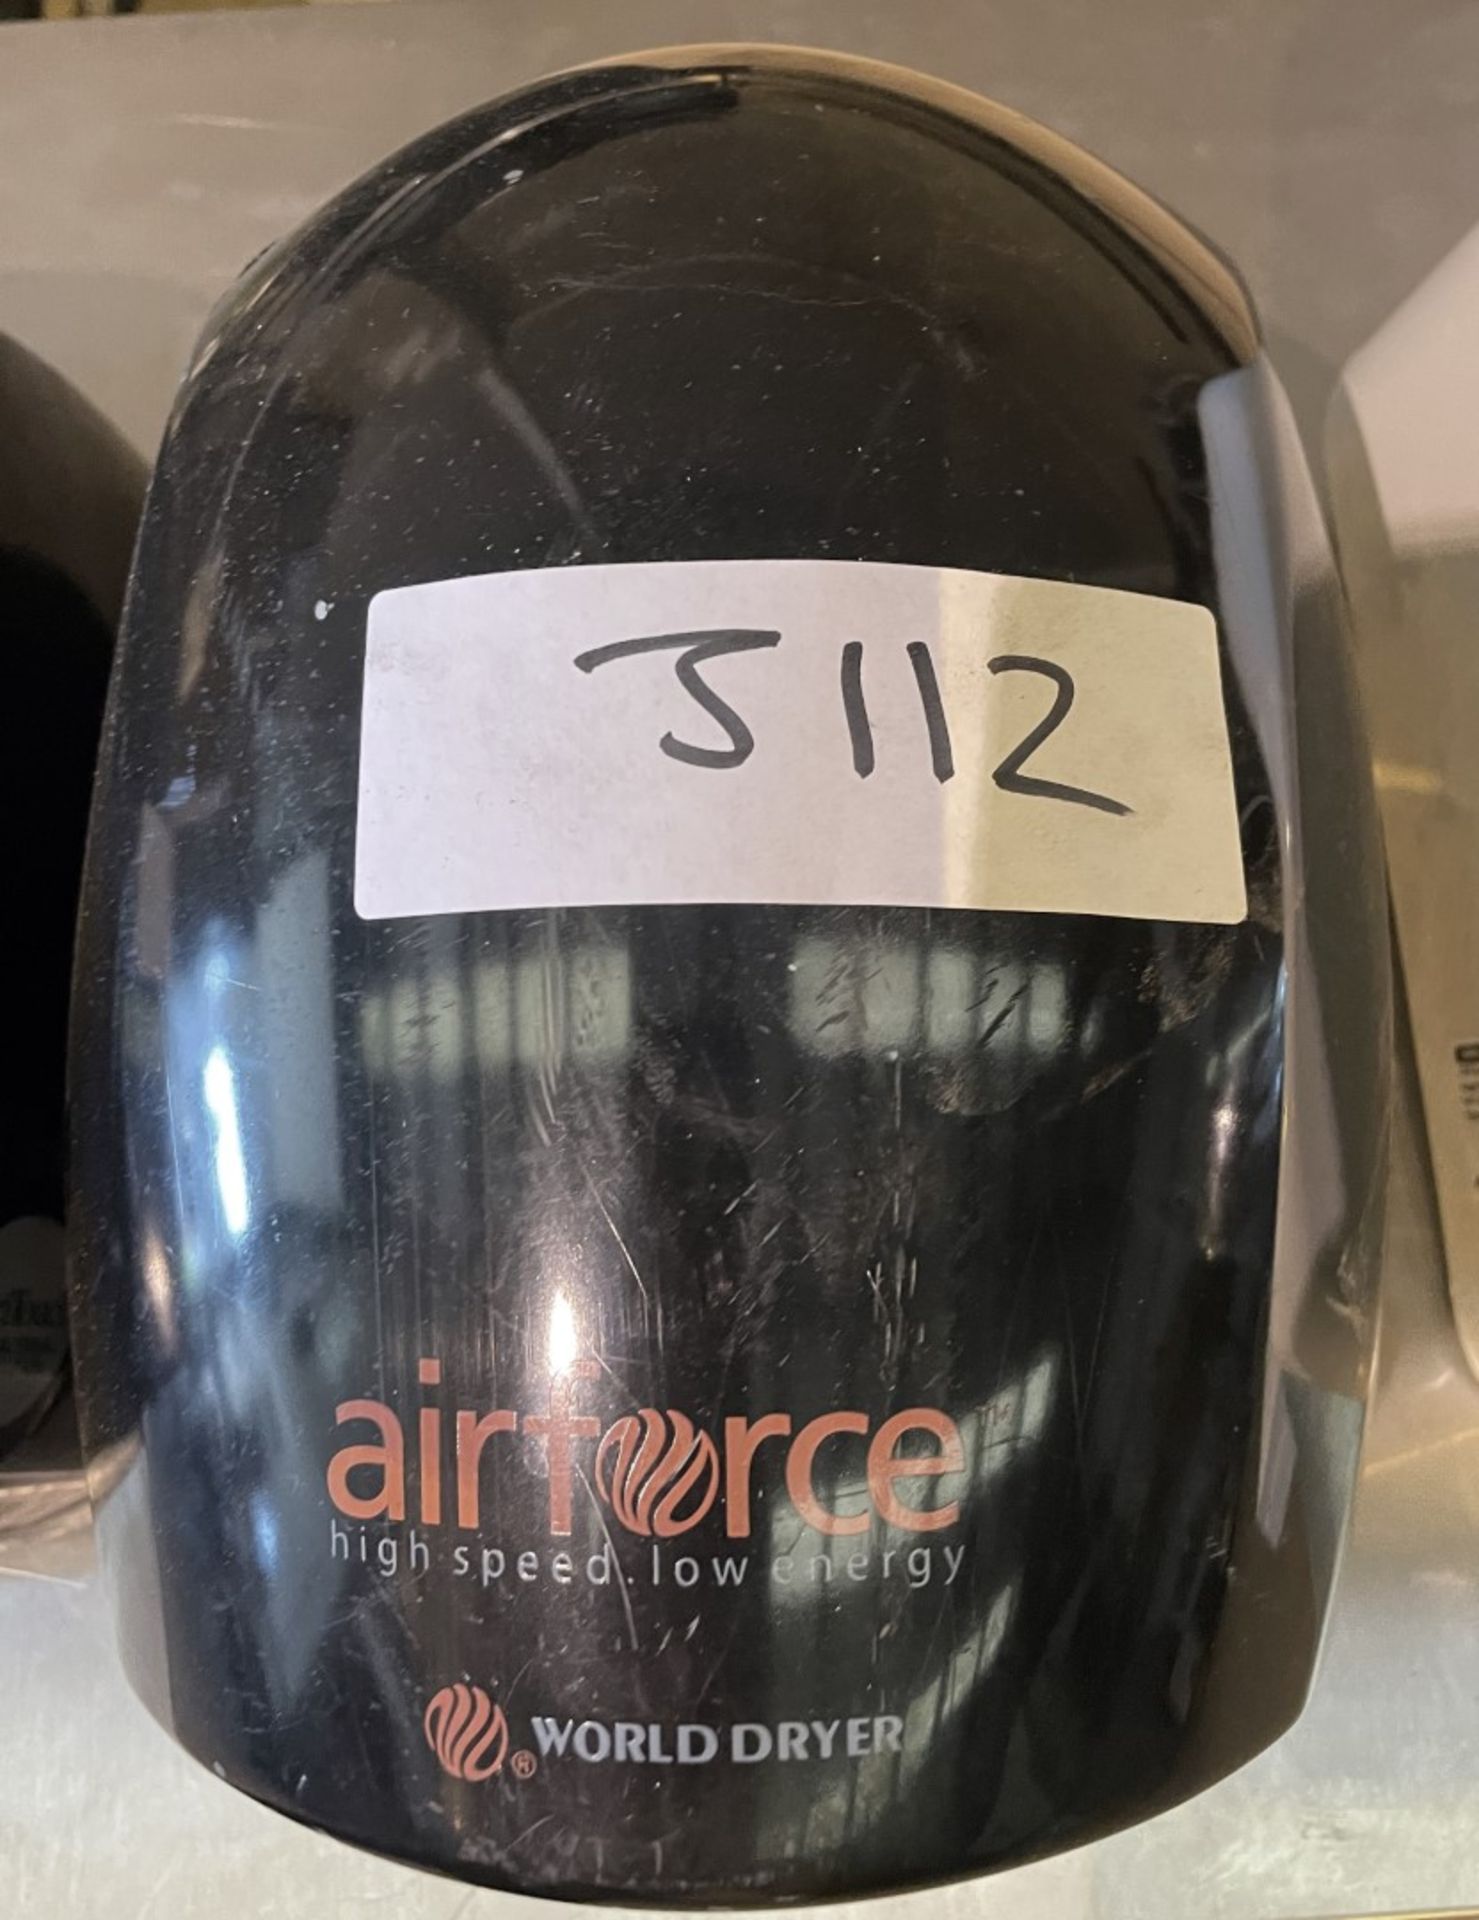 1 x Warner Howard 'Airforce' High Speed Low Energy Bathroom Hand Dryer In Black - Image 3 of 4